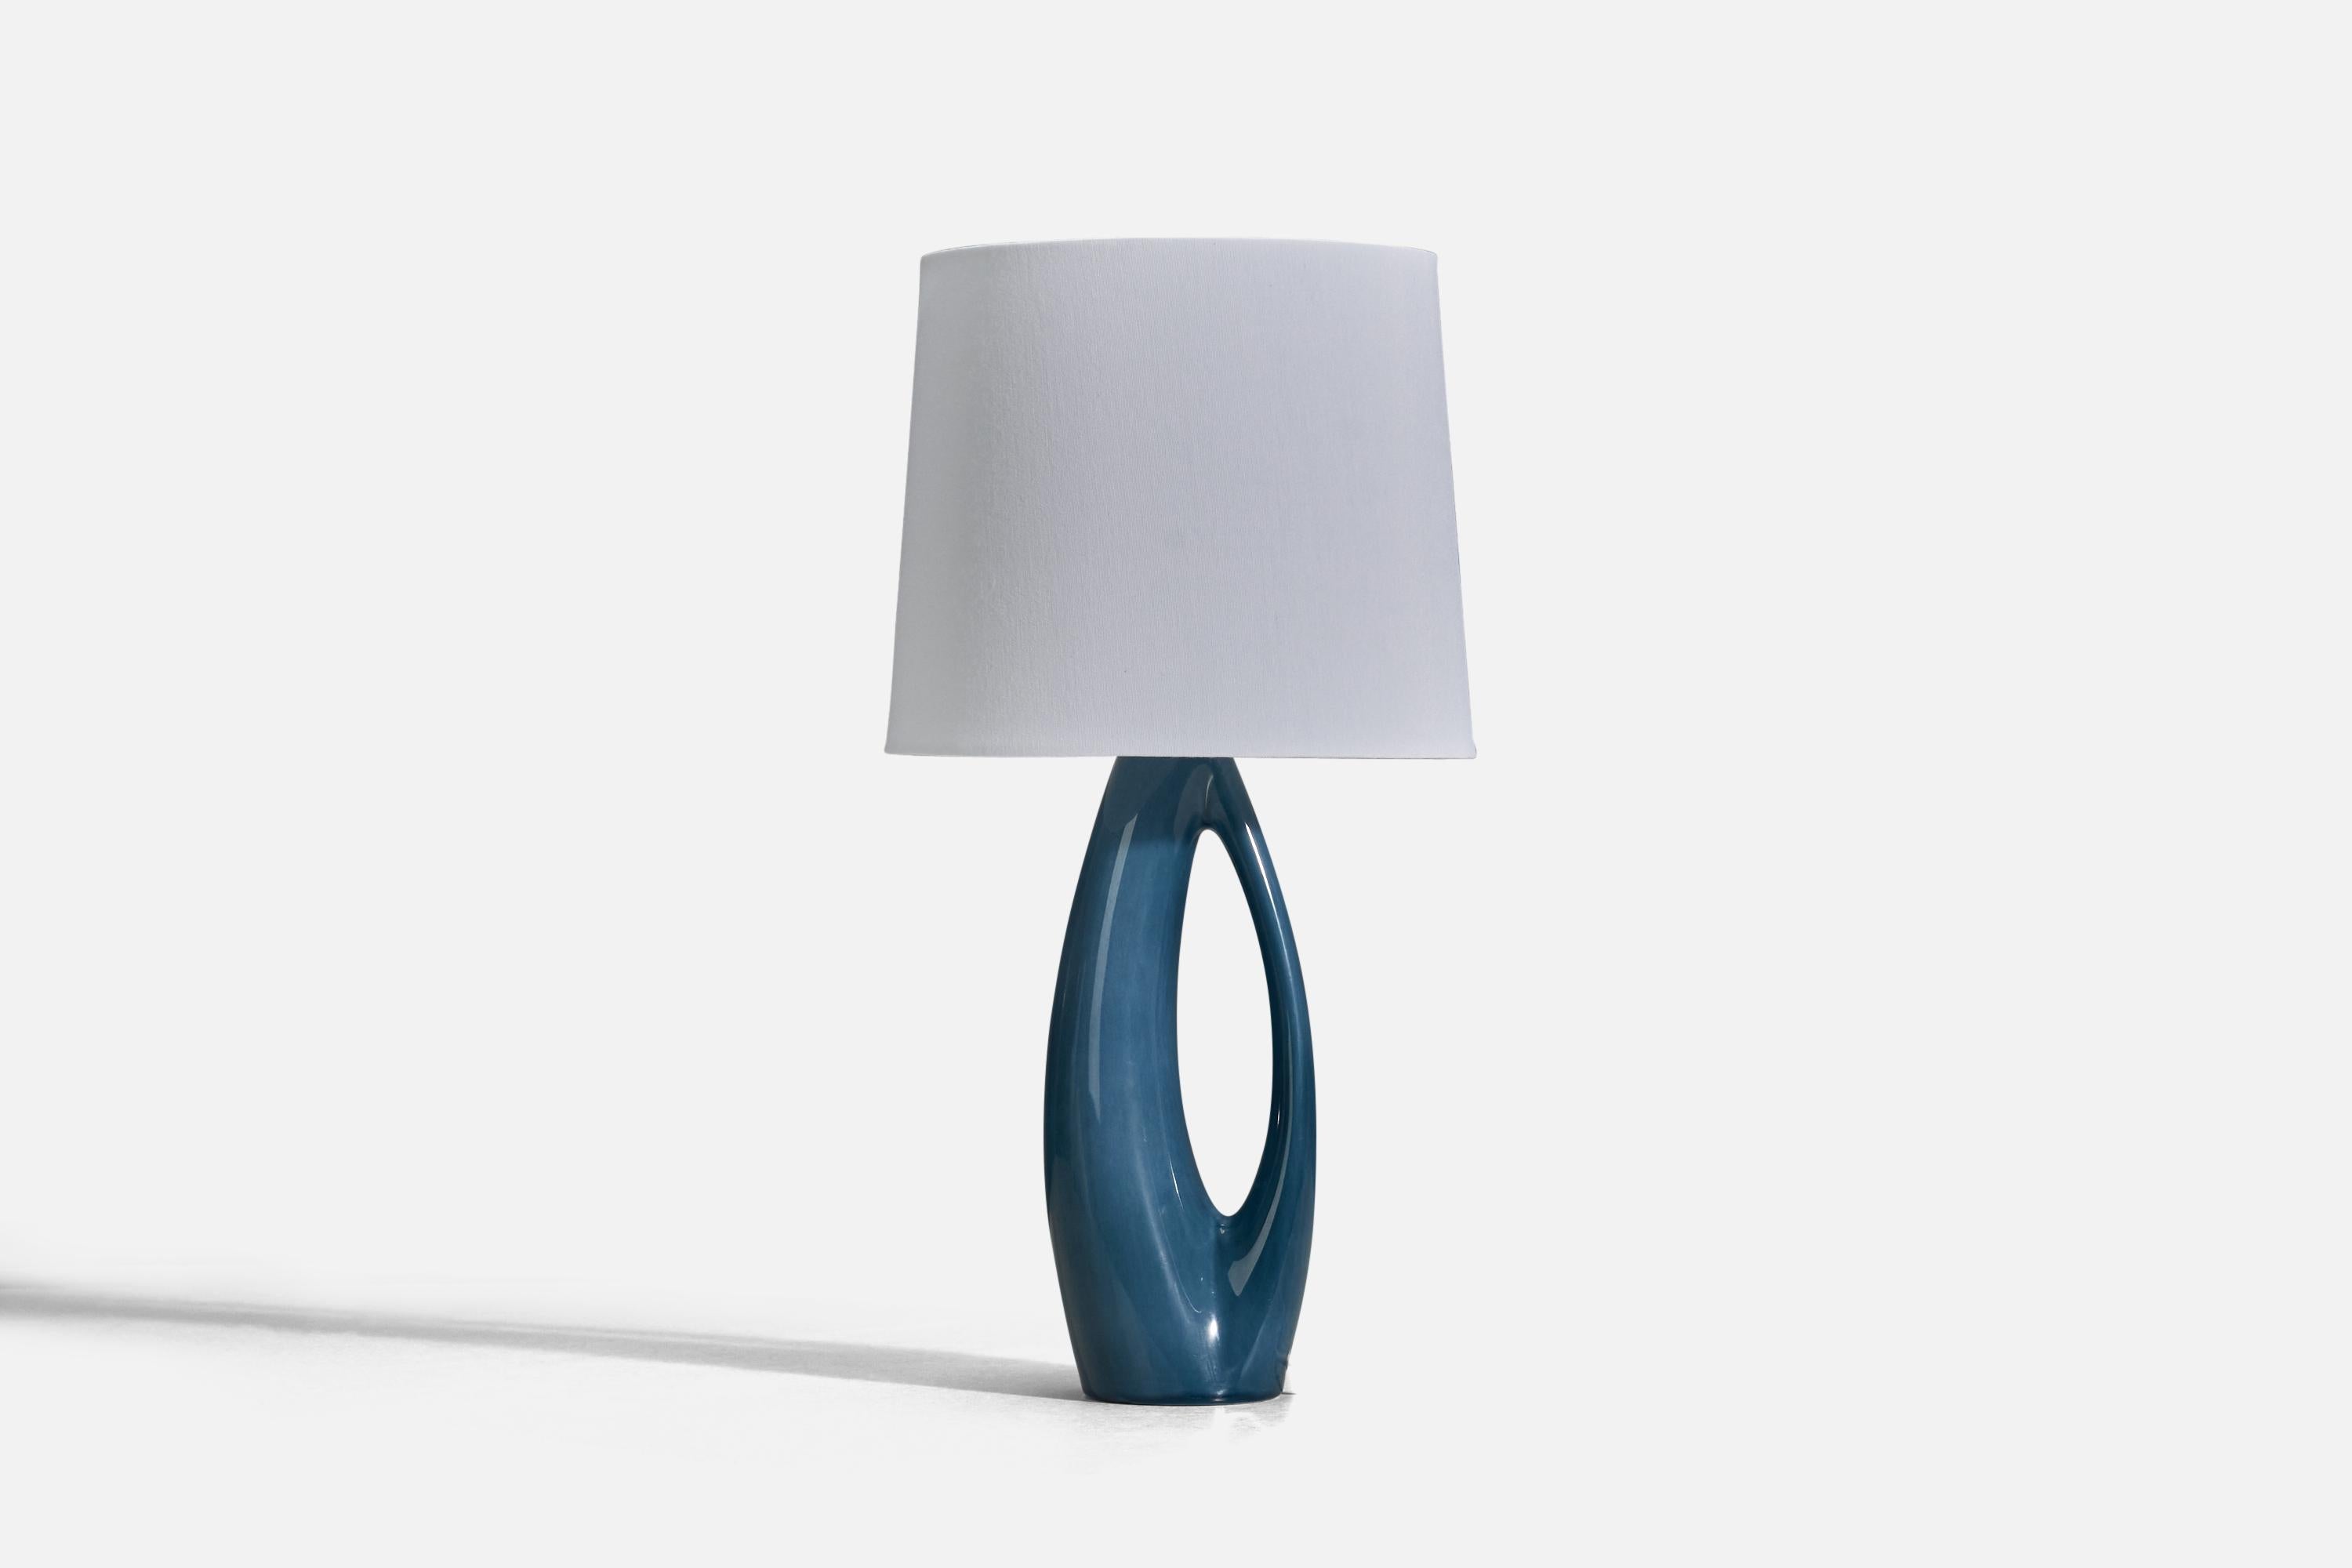 Un vase en grès bleu conçu et produit par Rörstrand, Suède, années 1950.

Vendu sans abat-jour
Dimensions de la lampe (pouces) : 12.06 x 3.78 x 2.72 (Hauteur x Largeur x Profondeur)
Dimensions de l'abat-jour (pouces) : 7 x 8 x 7 (Diamètre du haut x